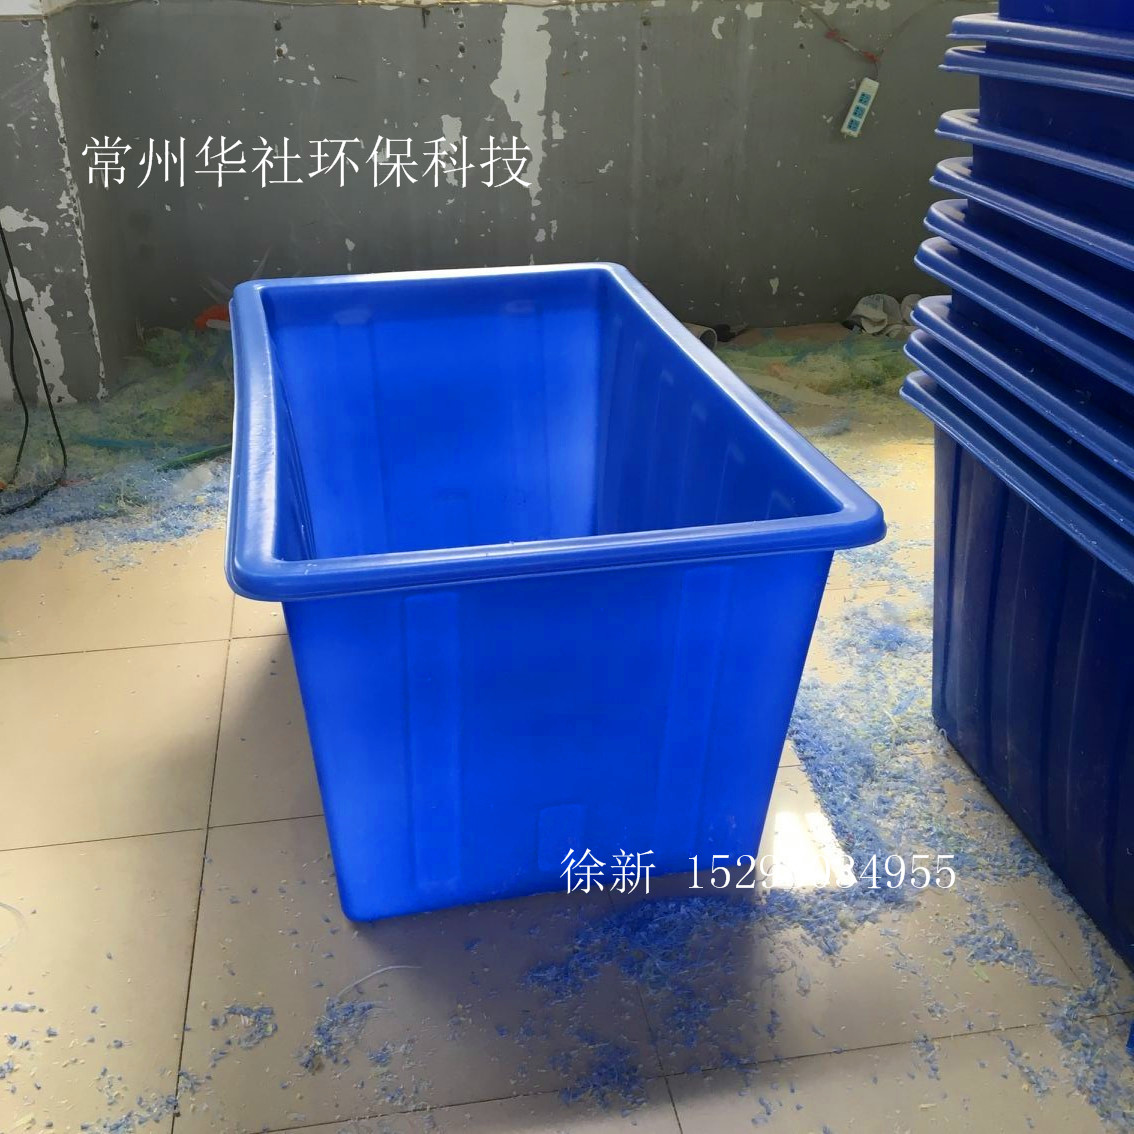 供应常州华社500L塑料方箱1000L塑料方箱 纺织桶 方形周转桶